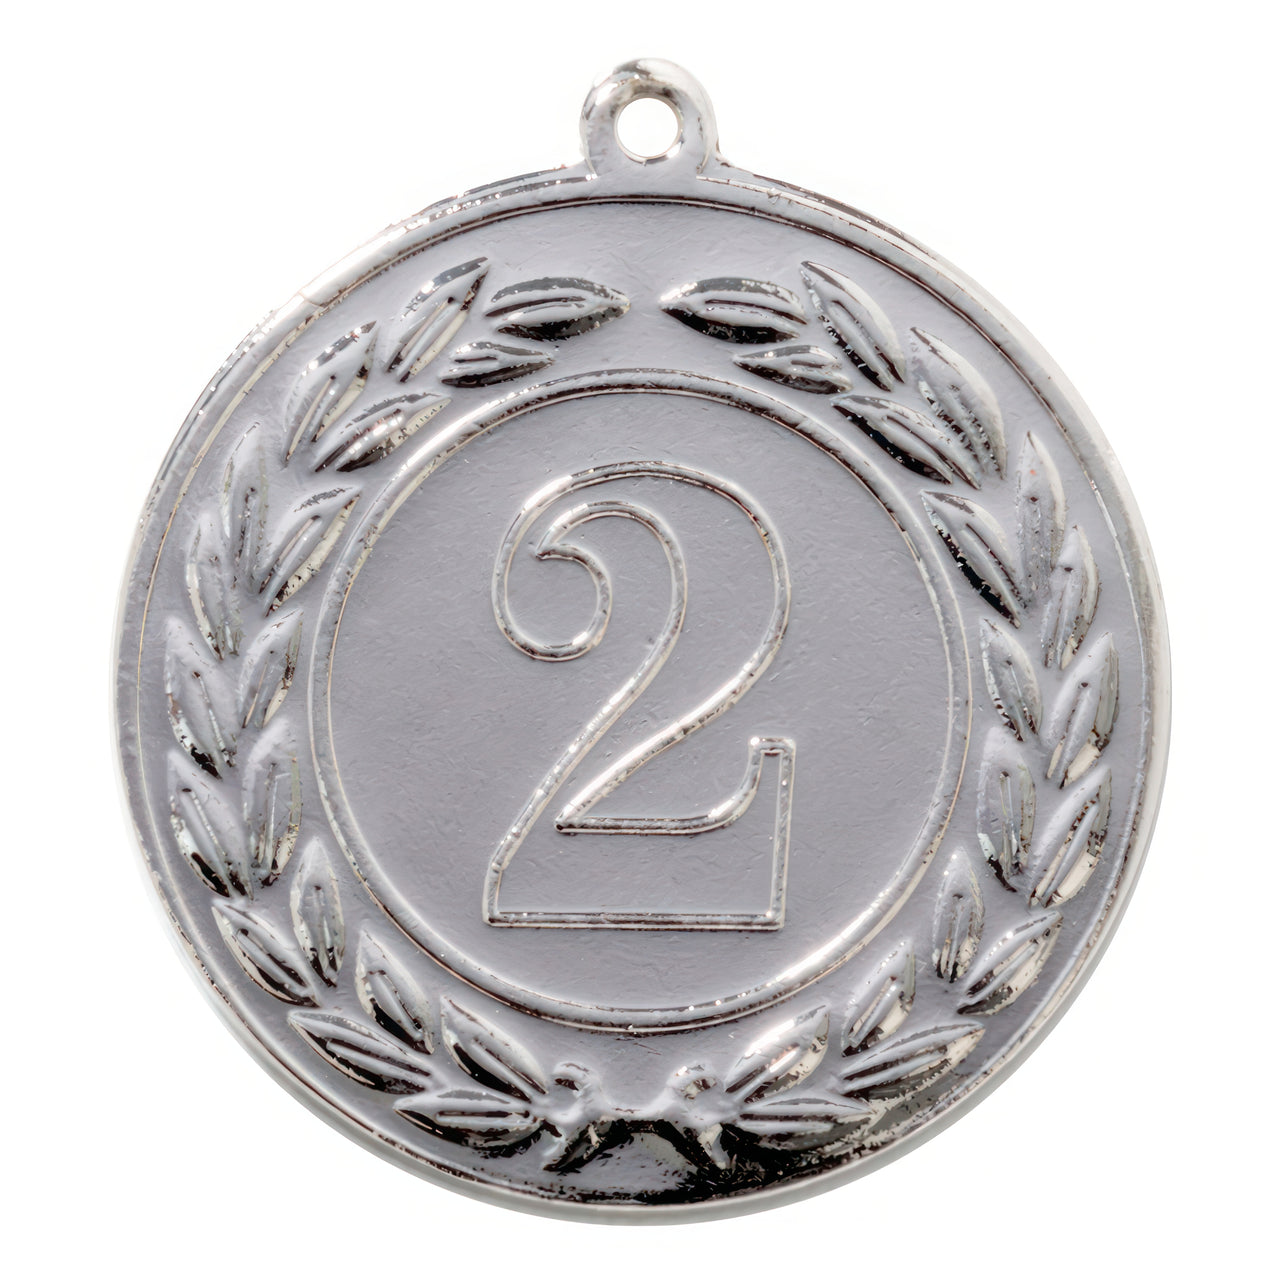 Die Medaillen Essen 40 mm PK79216 ist eine Silbermedaille mit der Nummer 2 in der Mitte, umgeben von einem kranzähnlichen Design. Diese aus hochwertigem Material gefertigte Medaille besticht durch ein exklusives Design für ein wahrhaft herausragendes Erscheinungsbild.